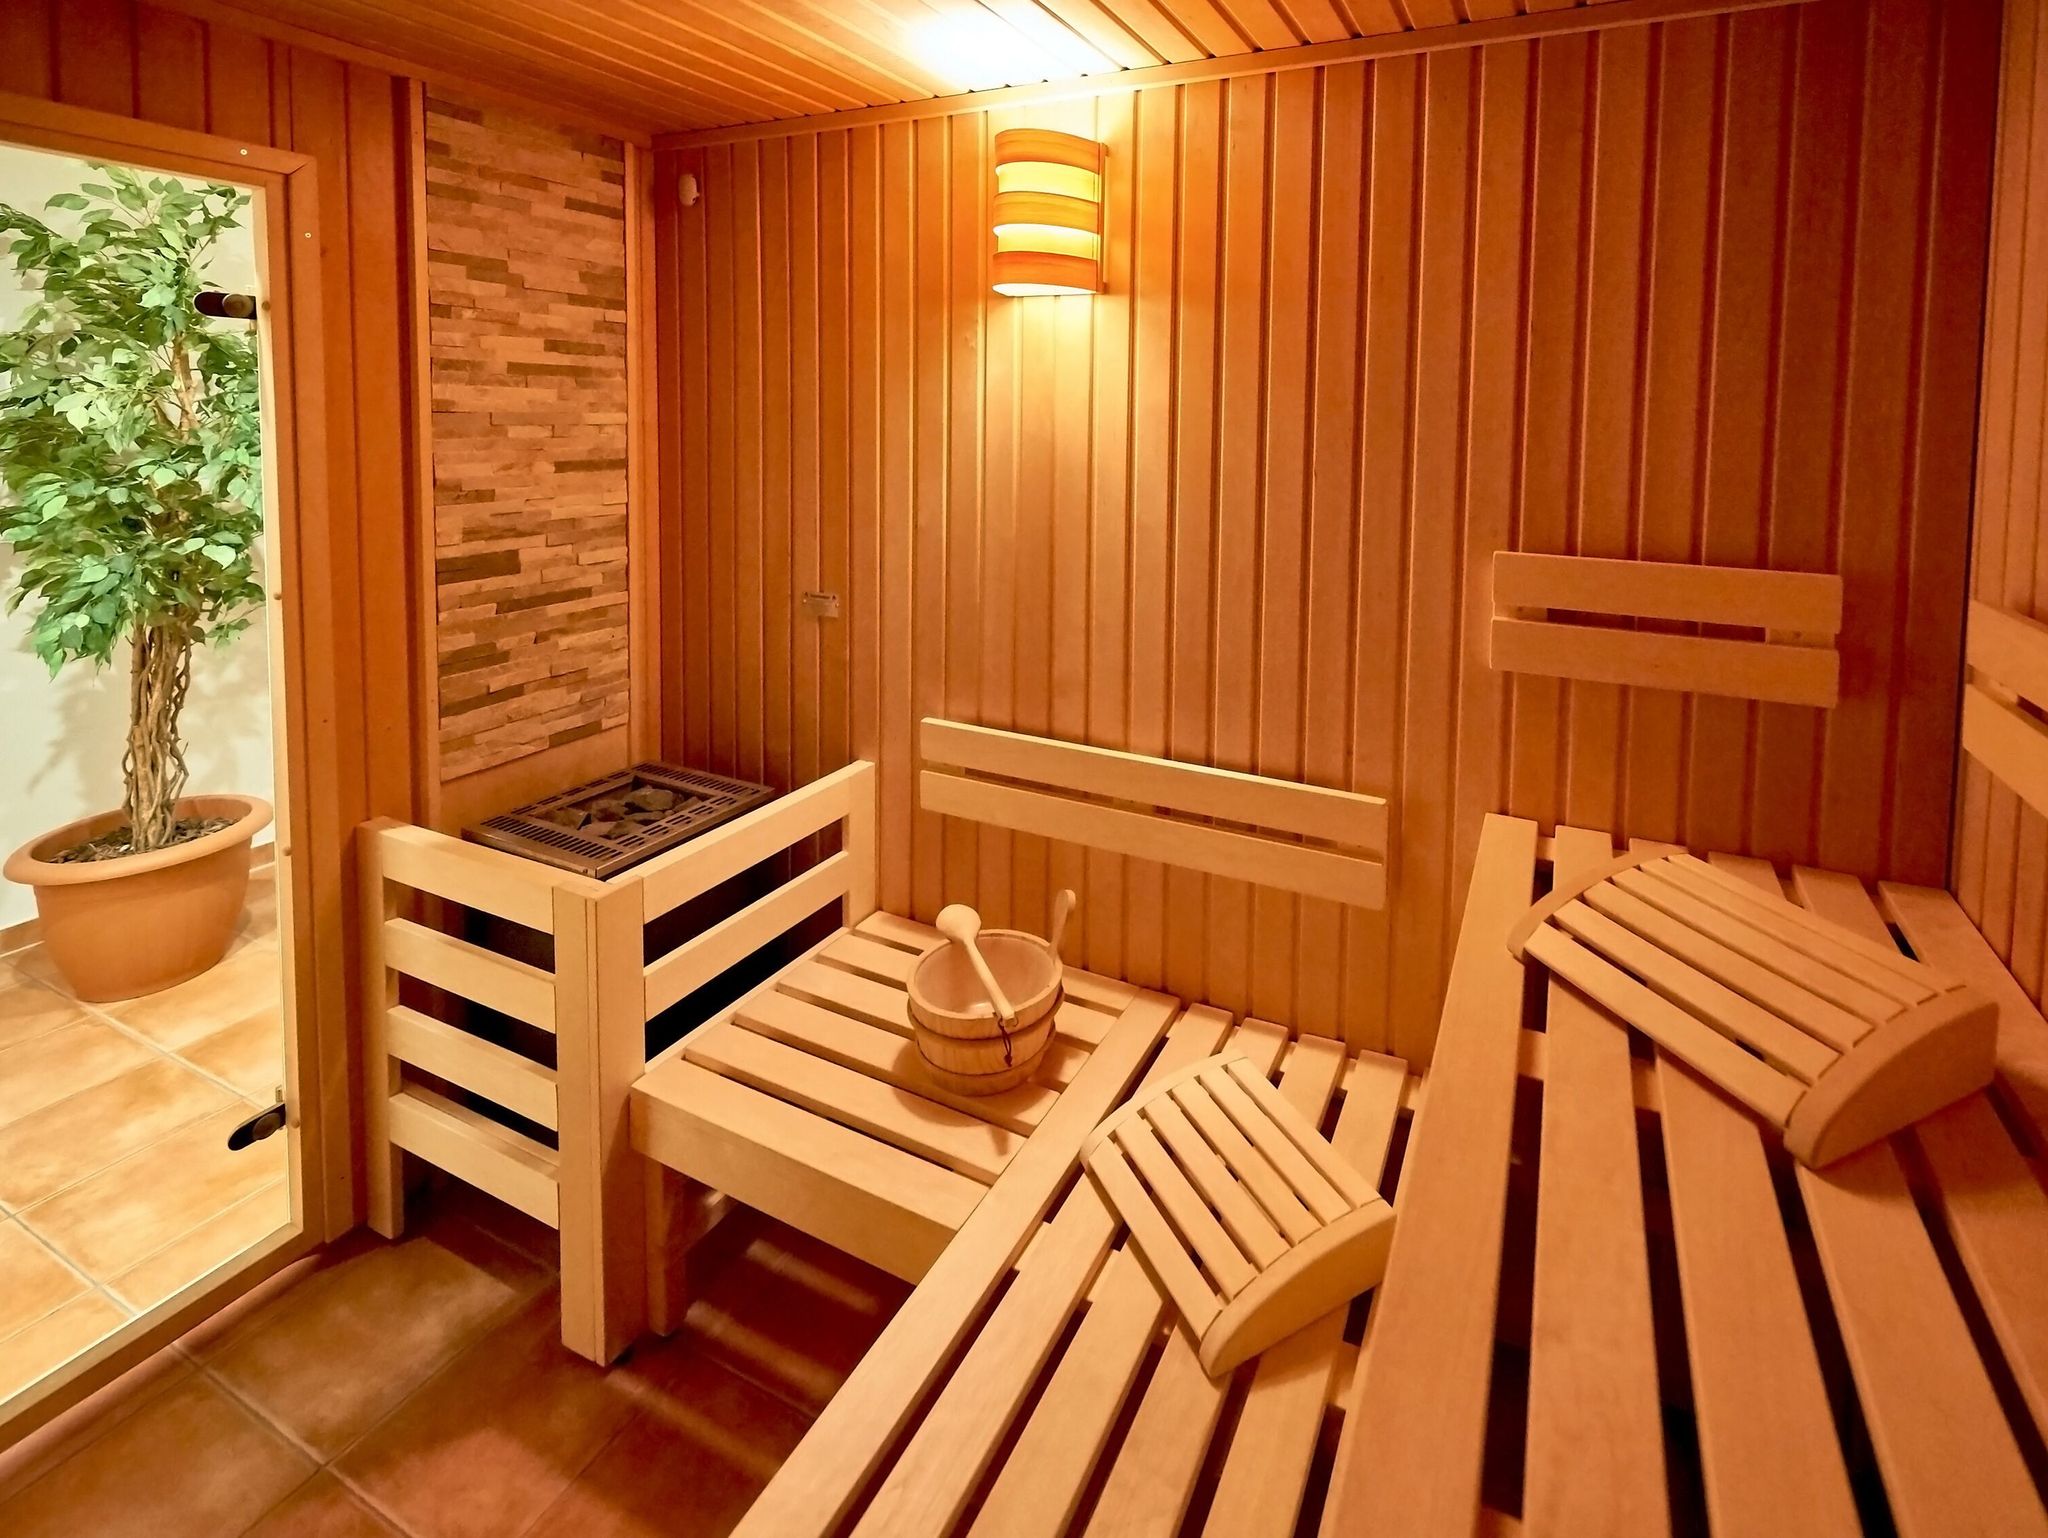 Gemeinschaftlicher Wellness- und Saunabereich im Vorderhaus